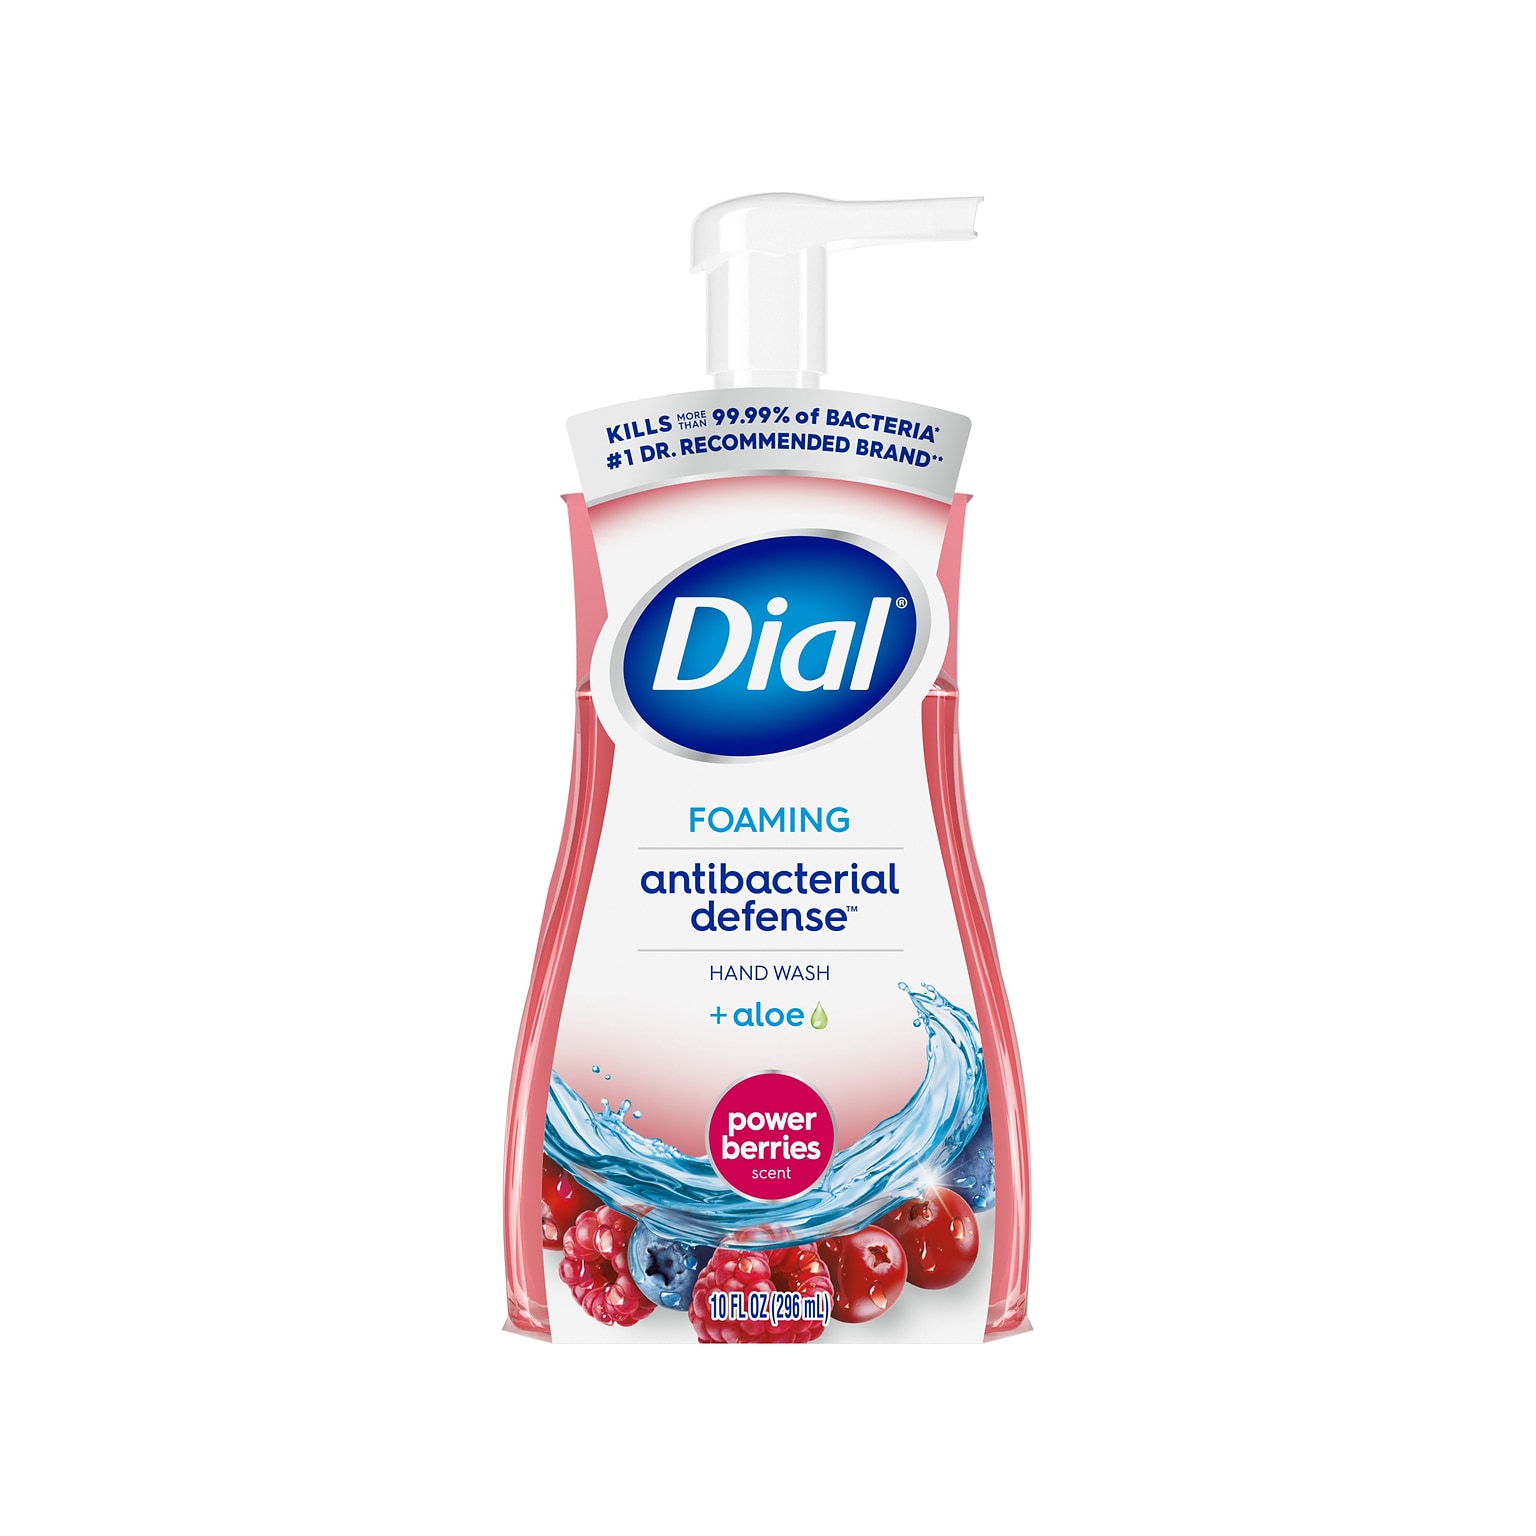 Dial Antibacterial Defense Foaming Hand Soap, Power Berries Scent, 10 Fl. Oz., 8/Carton (017000347271)